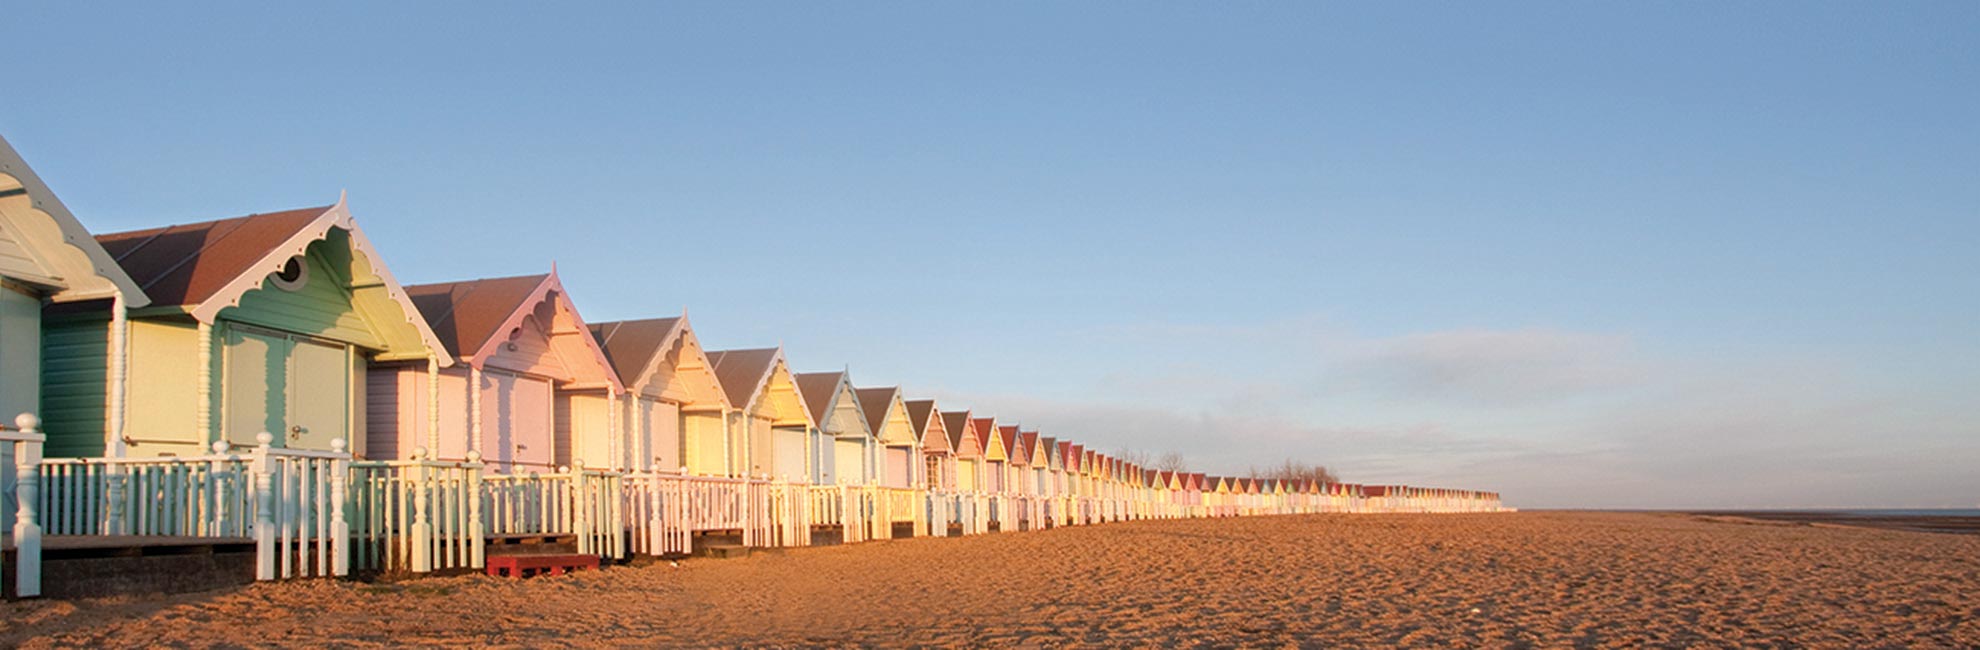 Colourful beach huts at sunrise on an Essex beach